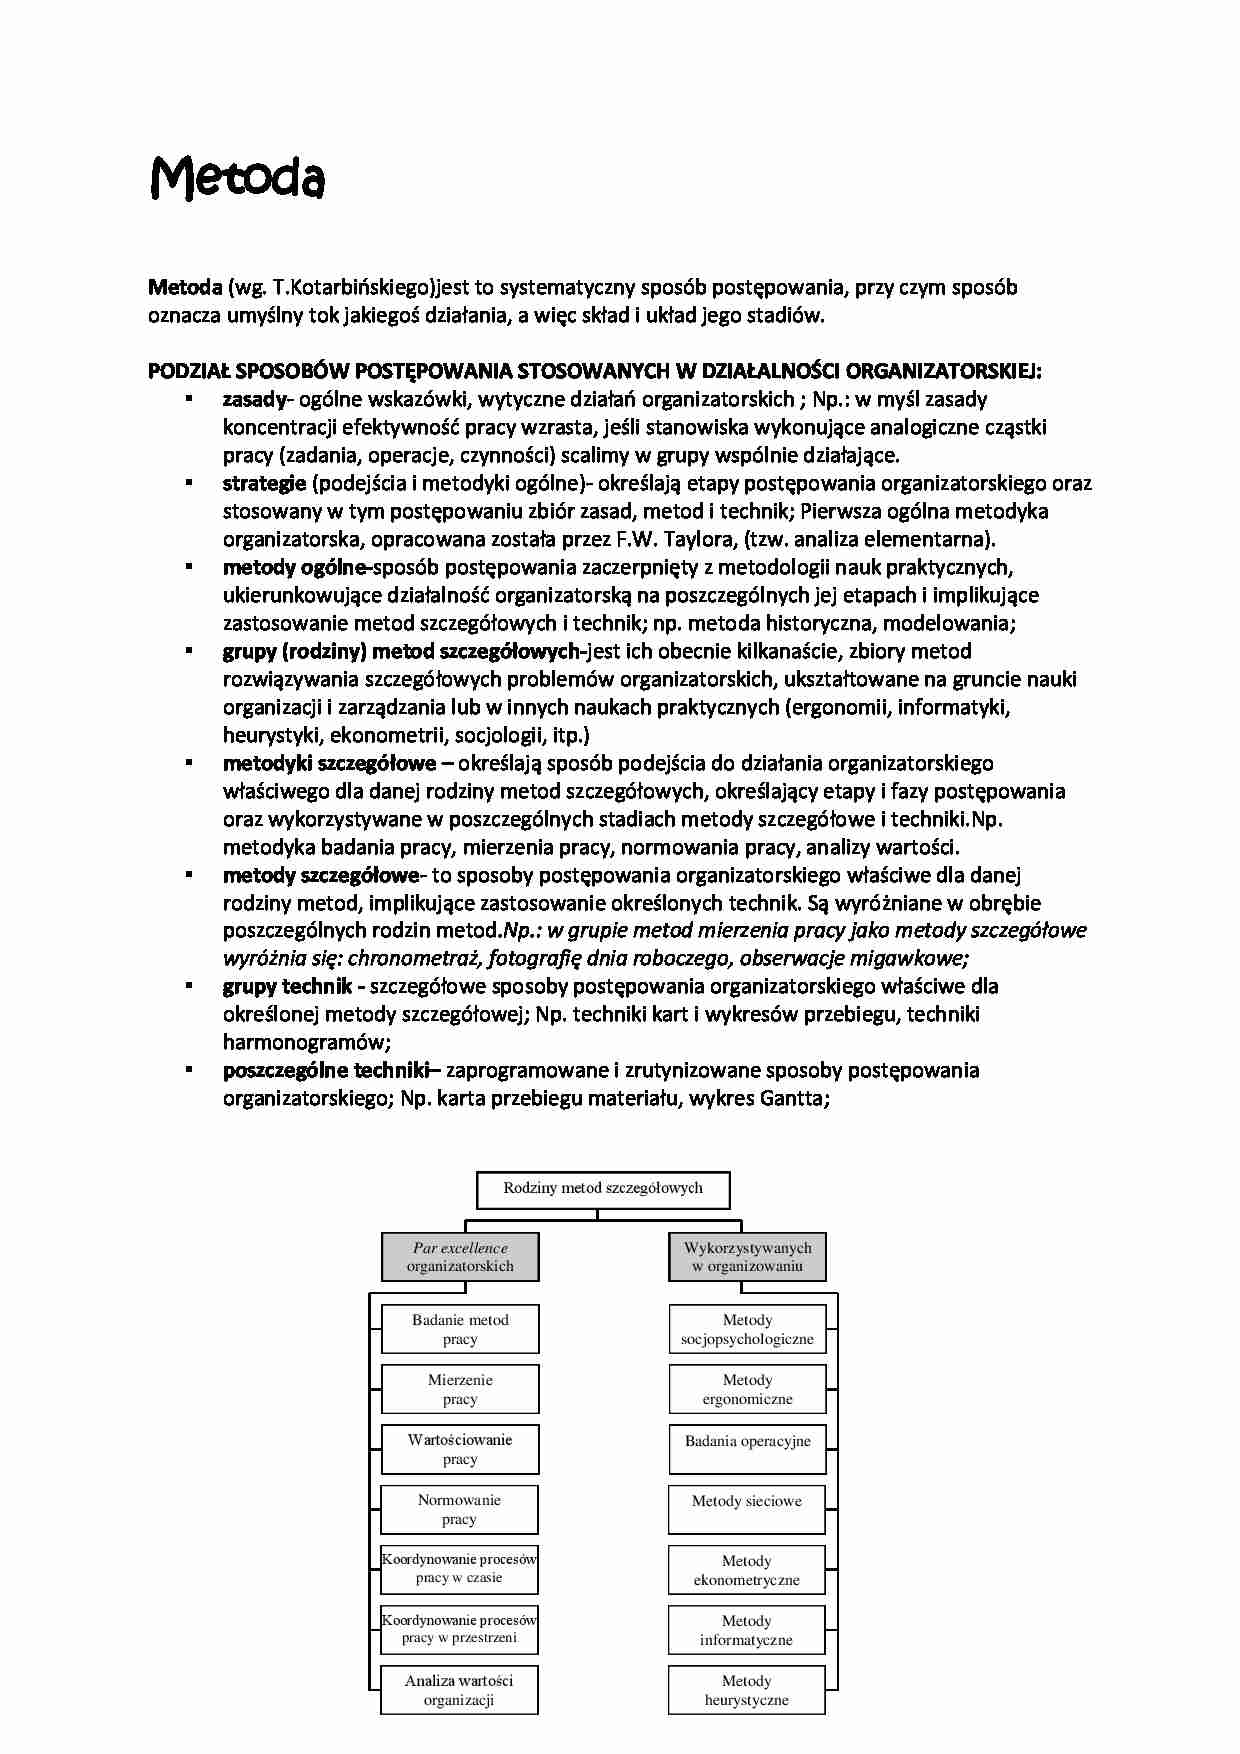 Podział sposobów postępowania stosowanych w działalności organizatorskiej - strona 1